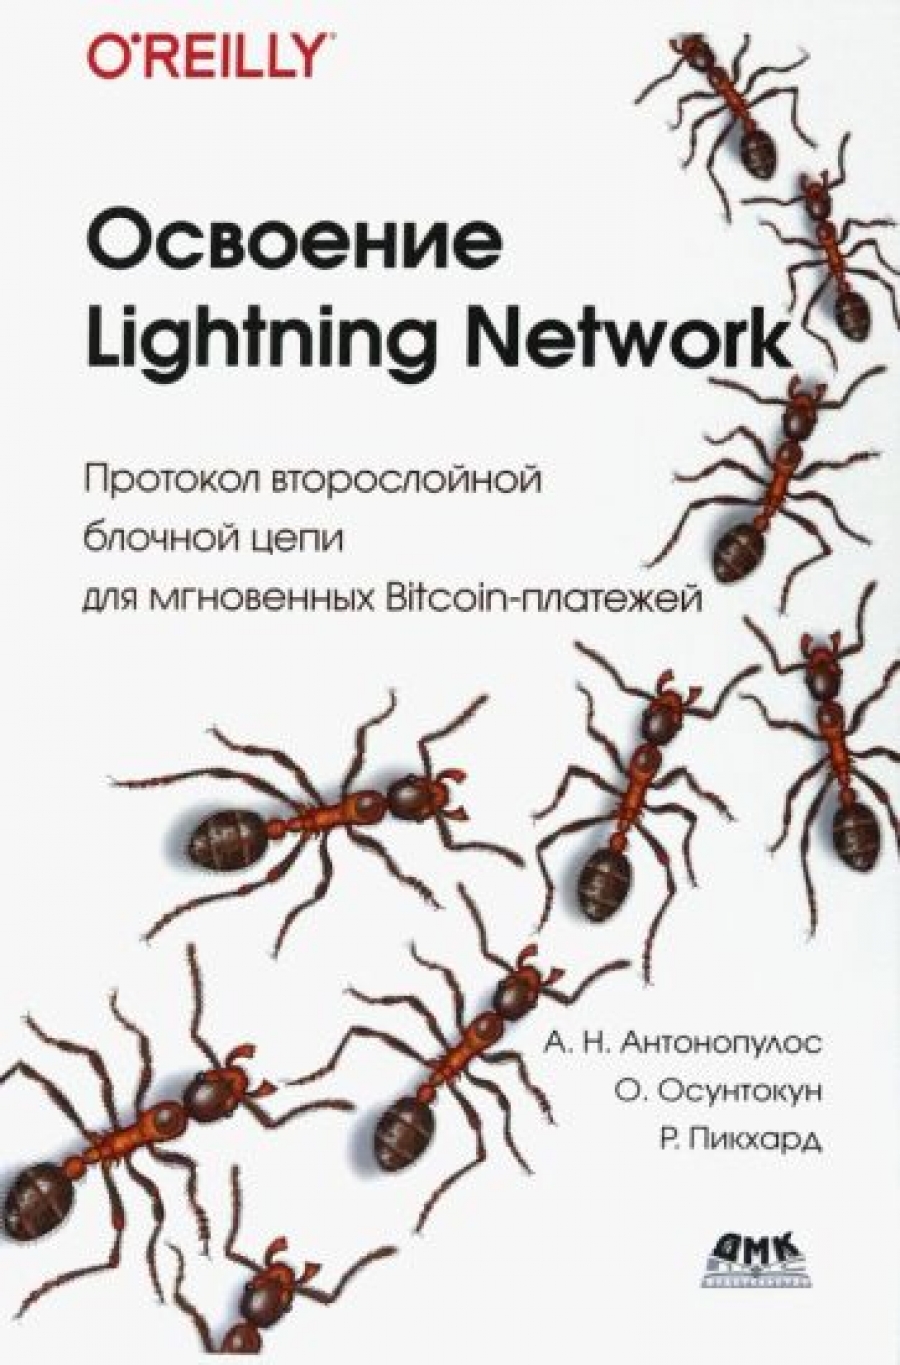  Lightning Network 